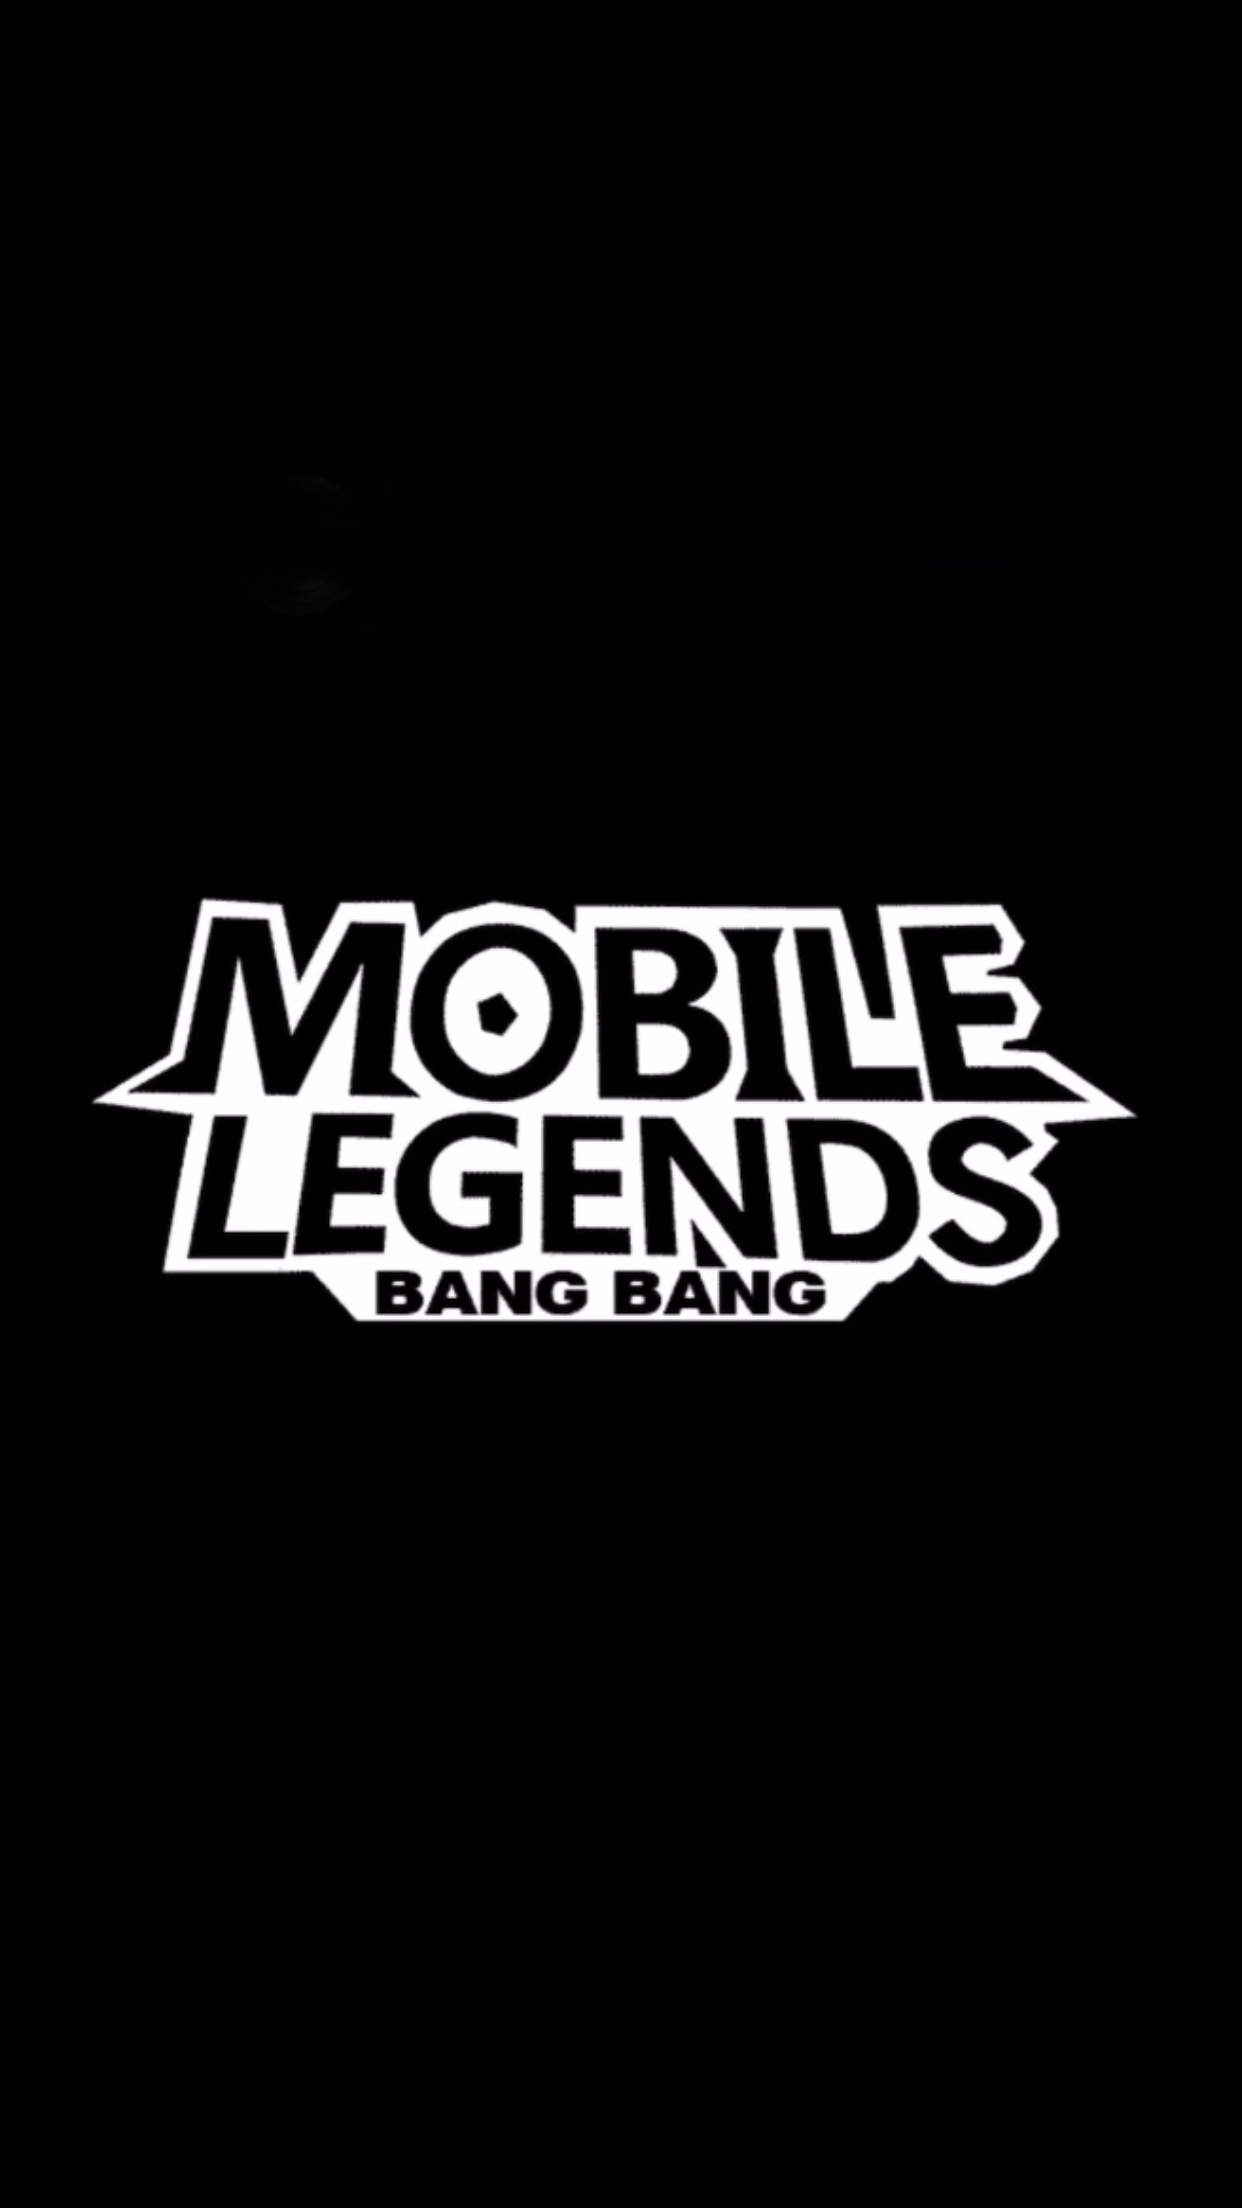 Legends Logo - Mobile legends logo png 6 » PNG Image